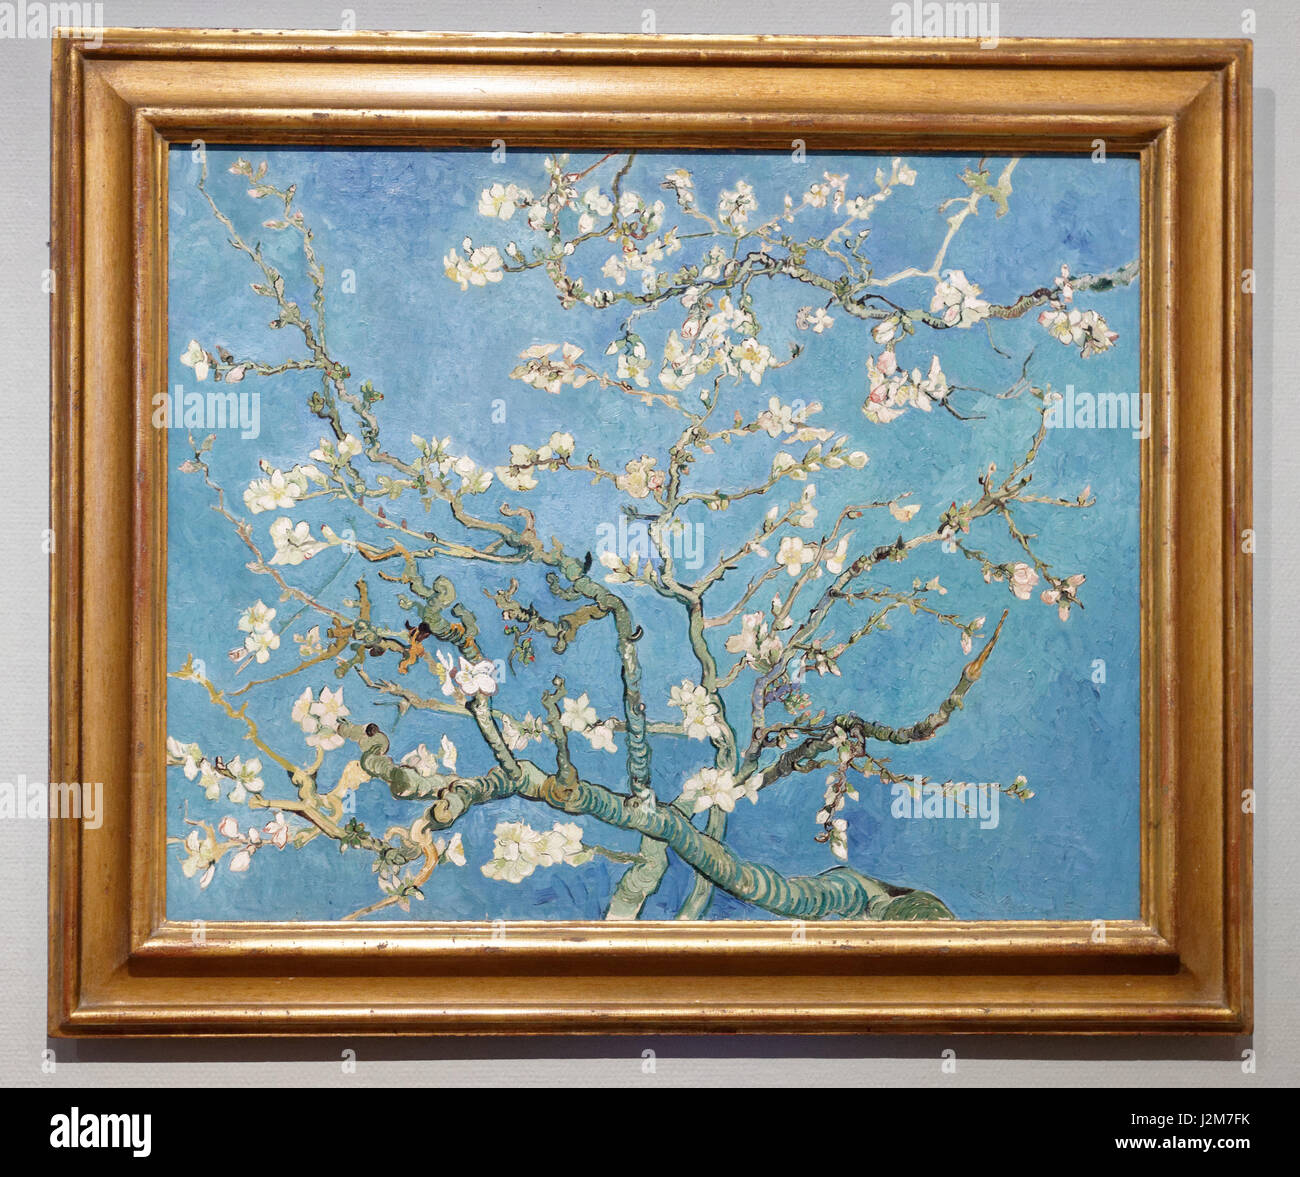 Pays Bas, Hollande septentrionale / Amsterdam, Noord-Holland, Quartier des musées, musée Van Gogh, l'amandier en fleurs (1890) de Vincent Van Gogh Banque D'Images